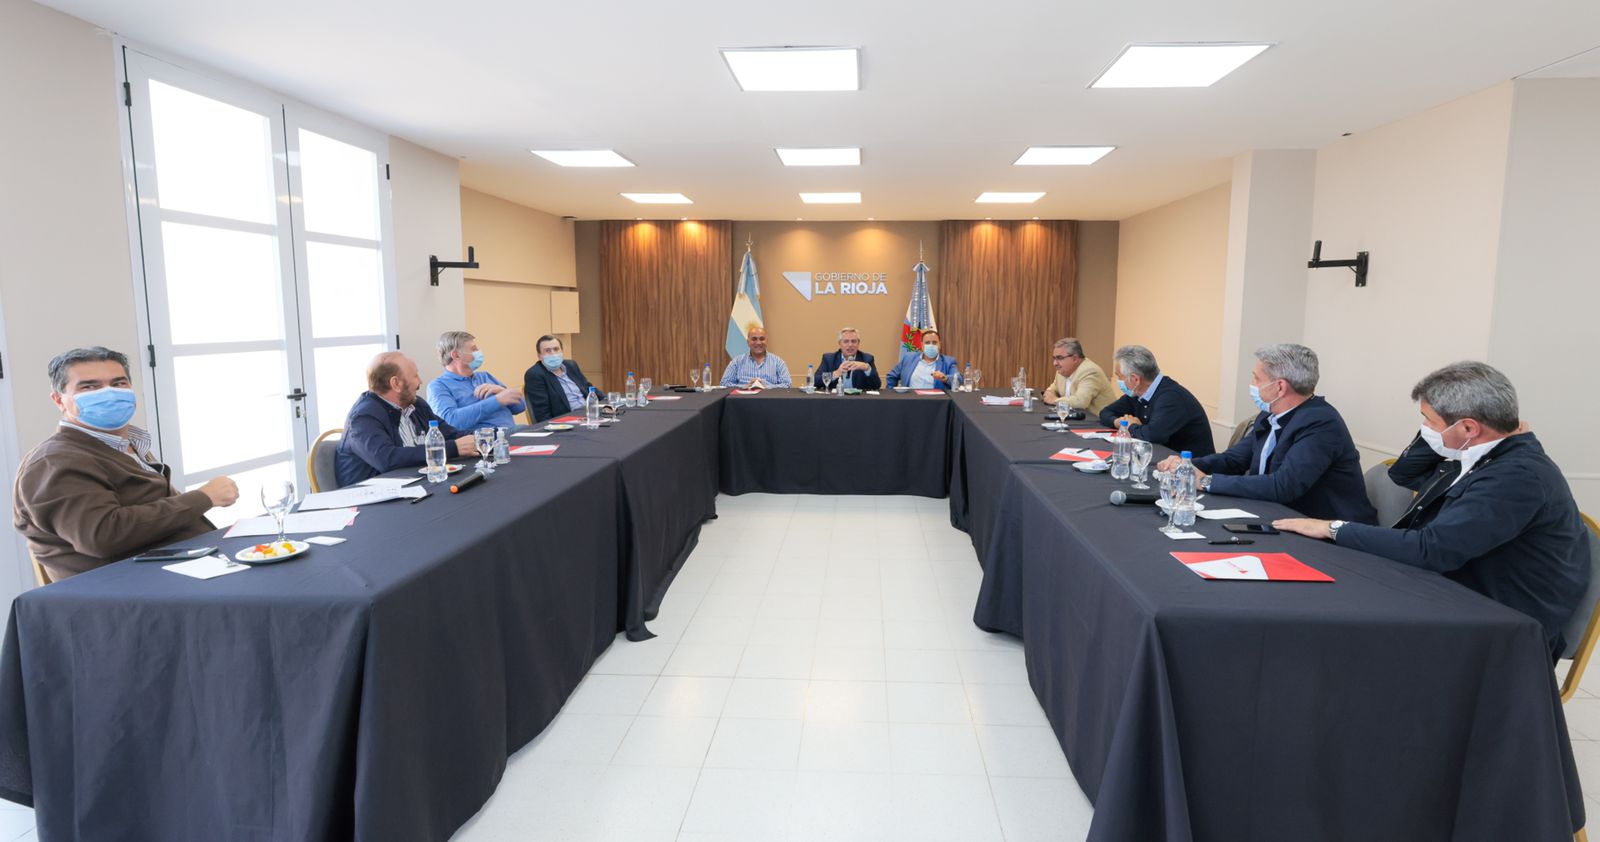 El sábado, Alberto Fernández dialogó en privado con los gobernadores